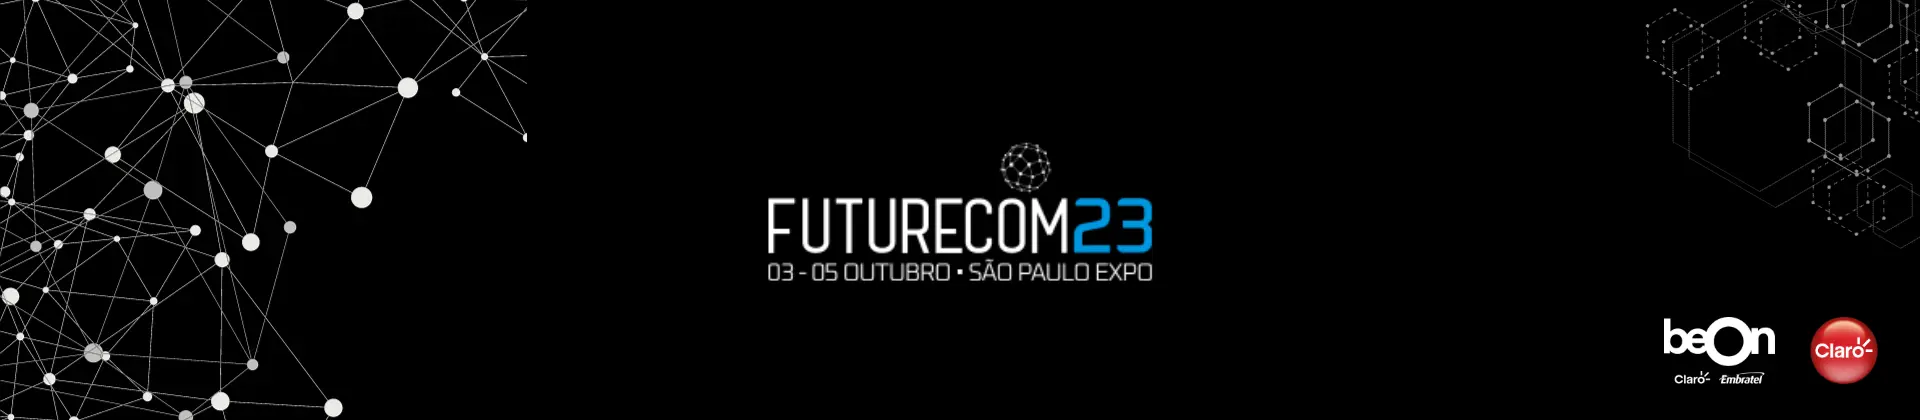 Imagem preta com linhas em branco que se cruzam simulando conexões, e a frase "futurecom 2023"